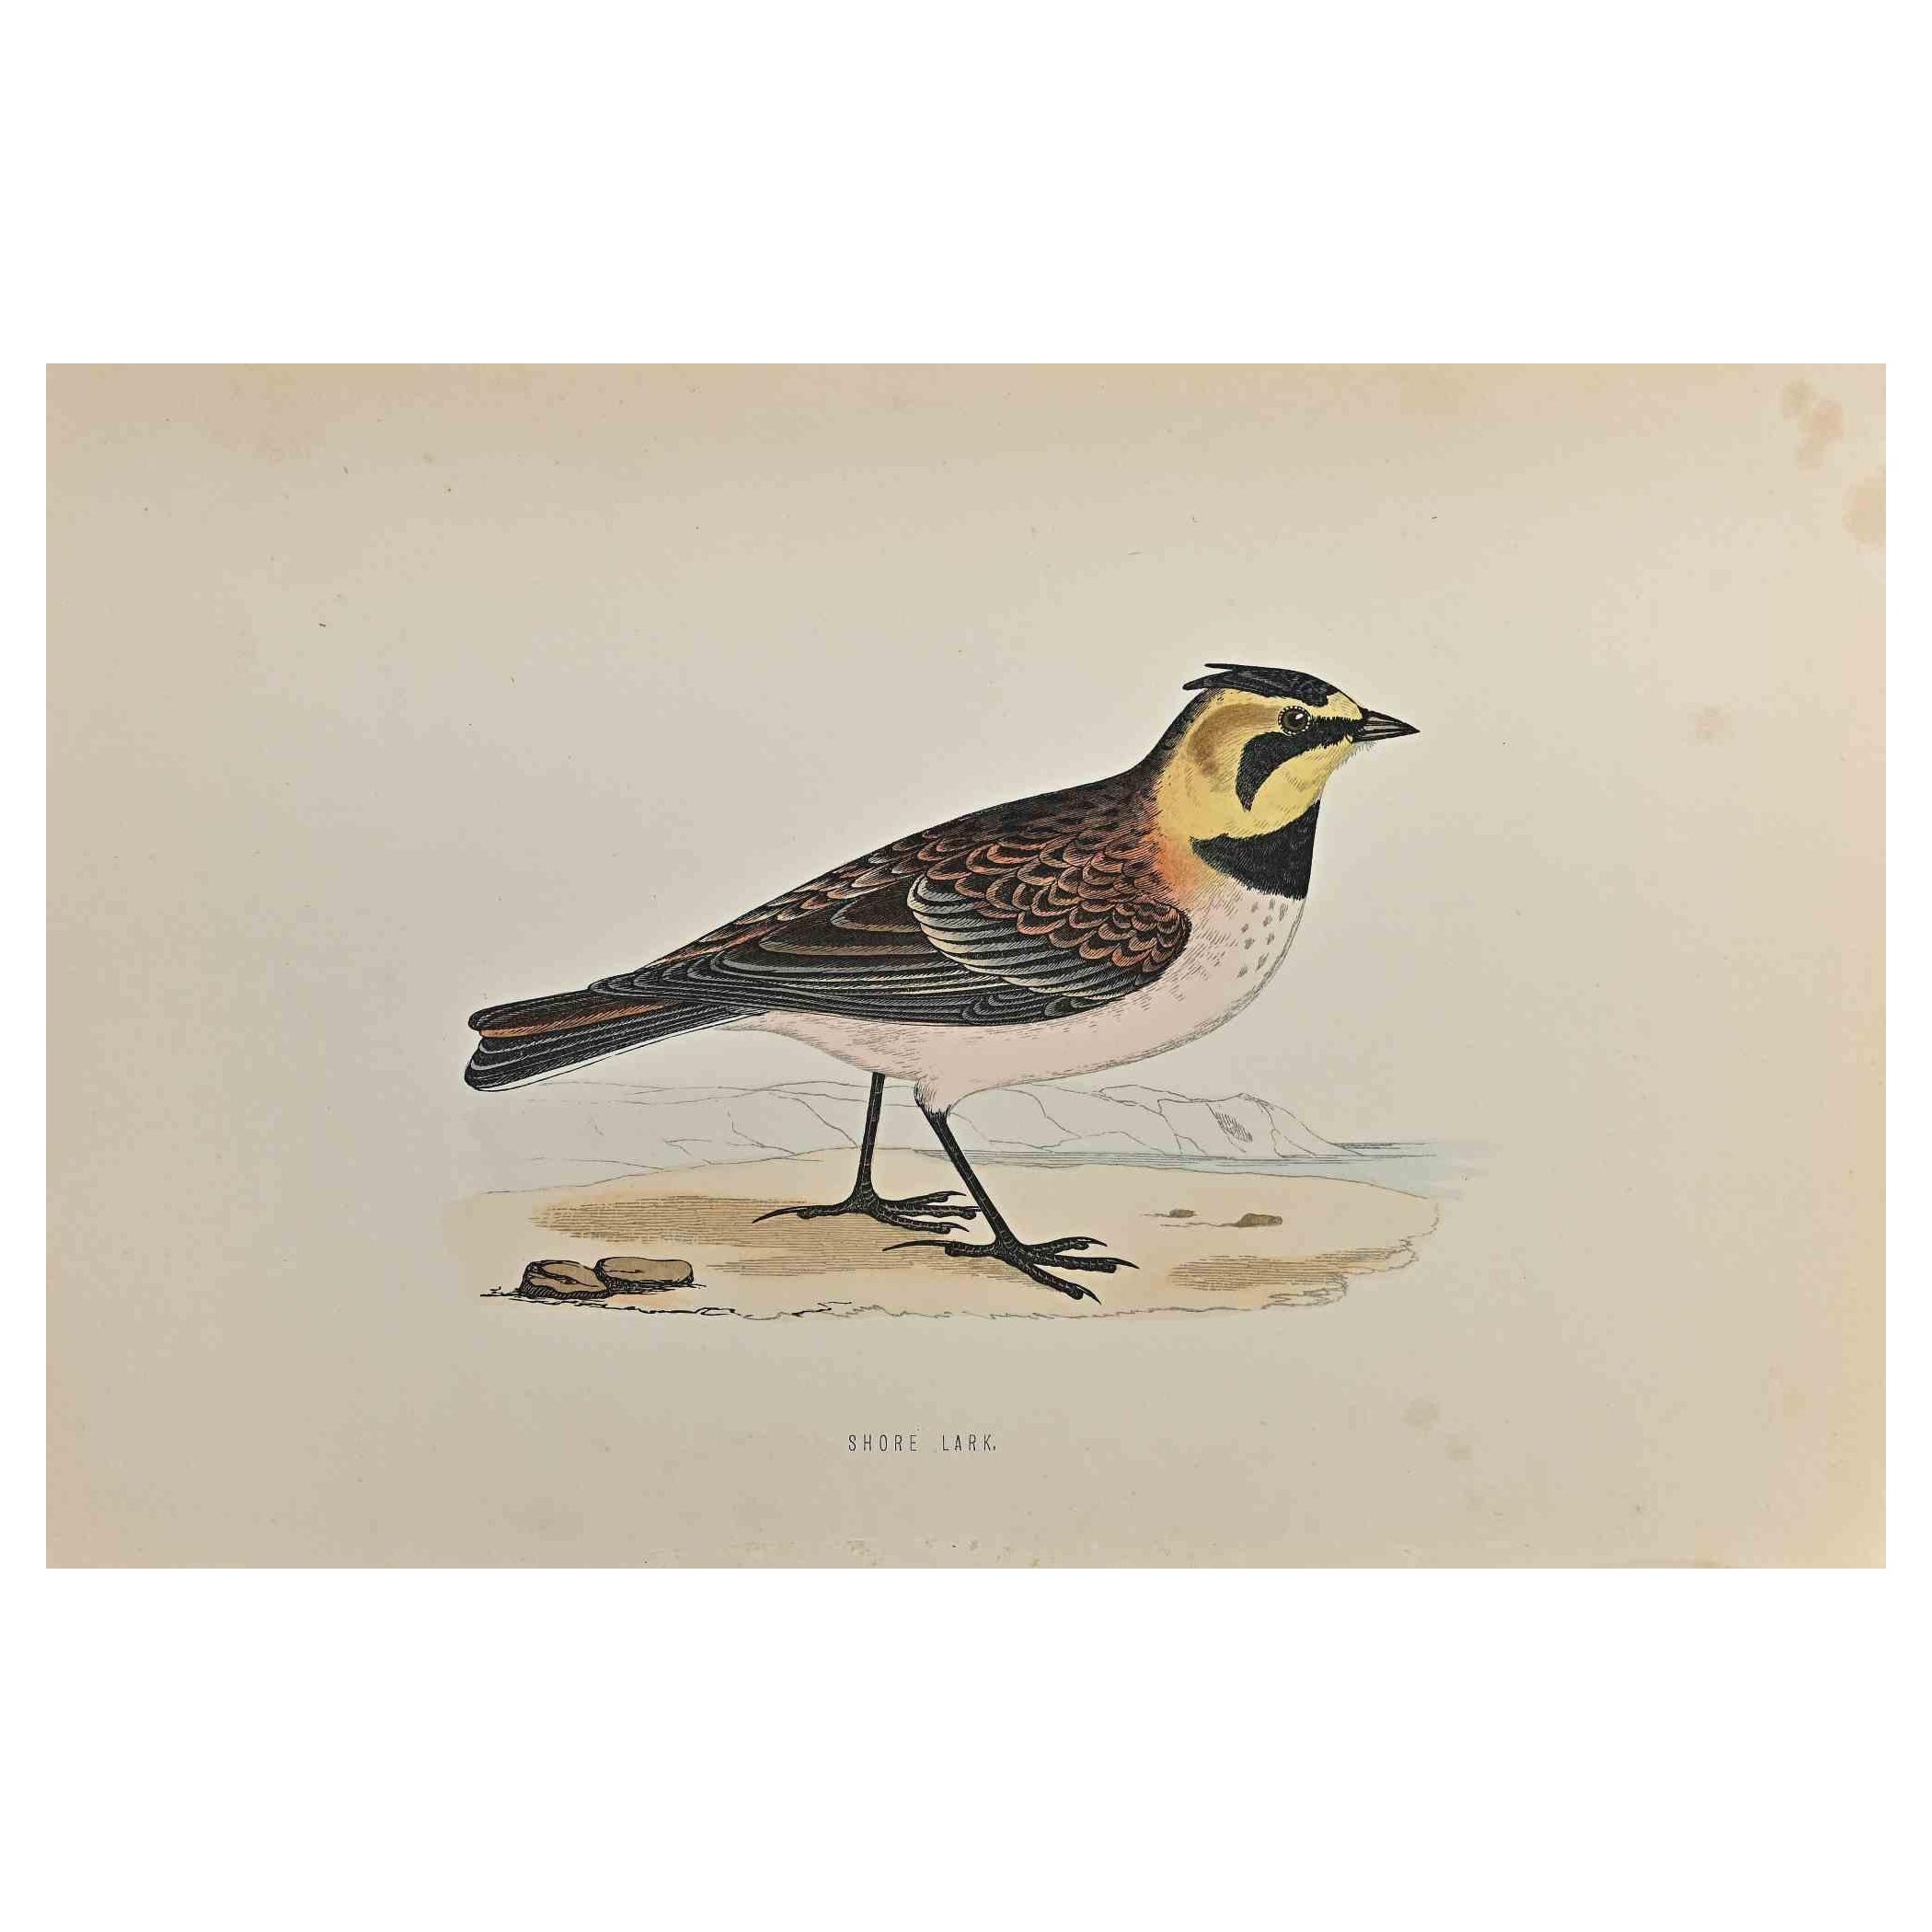 Shore Lark ist ein modernes Kunstwerk, das 1870 von dem britischen Künstler Alexander Francis Lydon (1836-1917) geschaffen wurde. 

Holzschnitt, handkoloriert, veröffentlicht von London, Bell & Sons, 1870.  Name des Vogels in der Platte gedruckt.